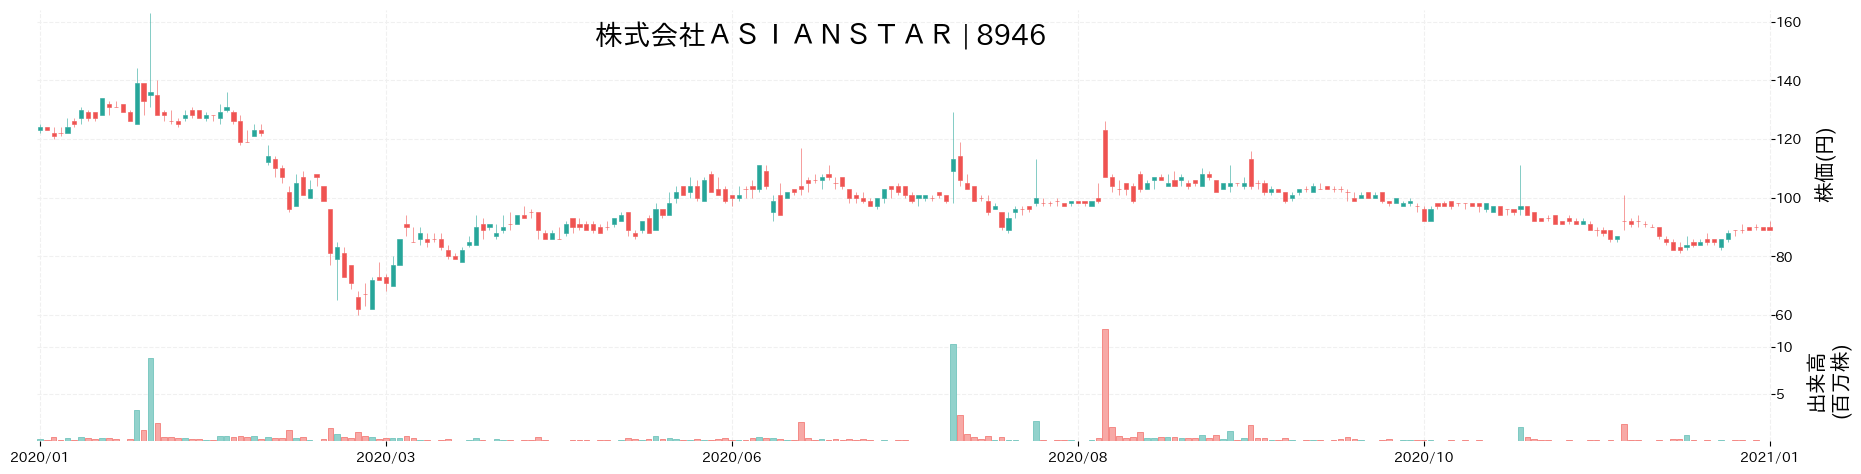 ASIAN STARの株価推移(2020)